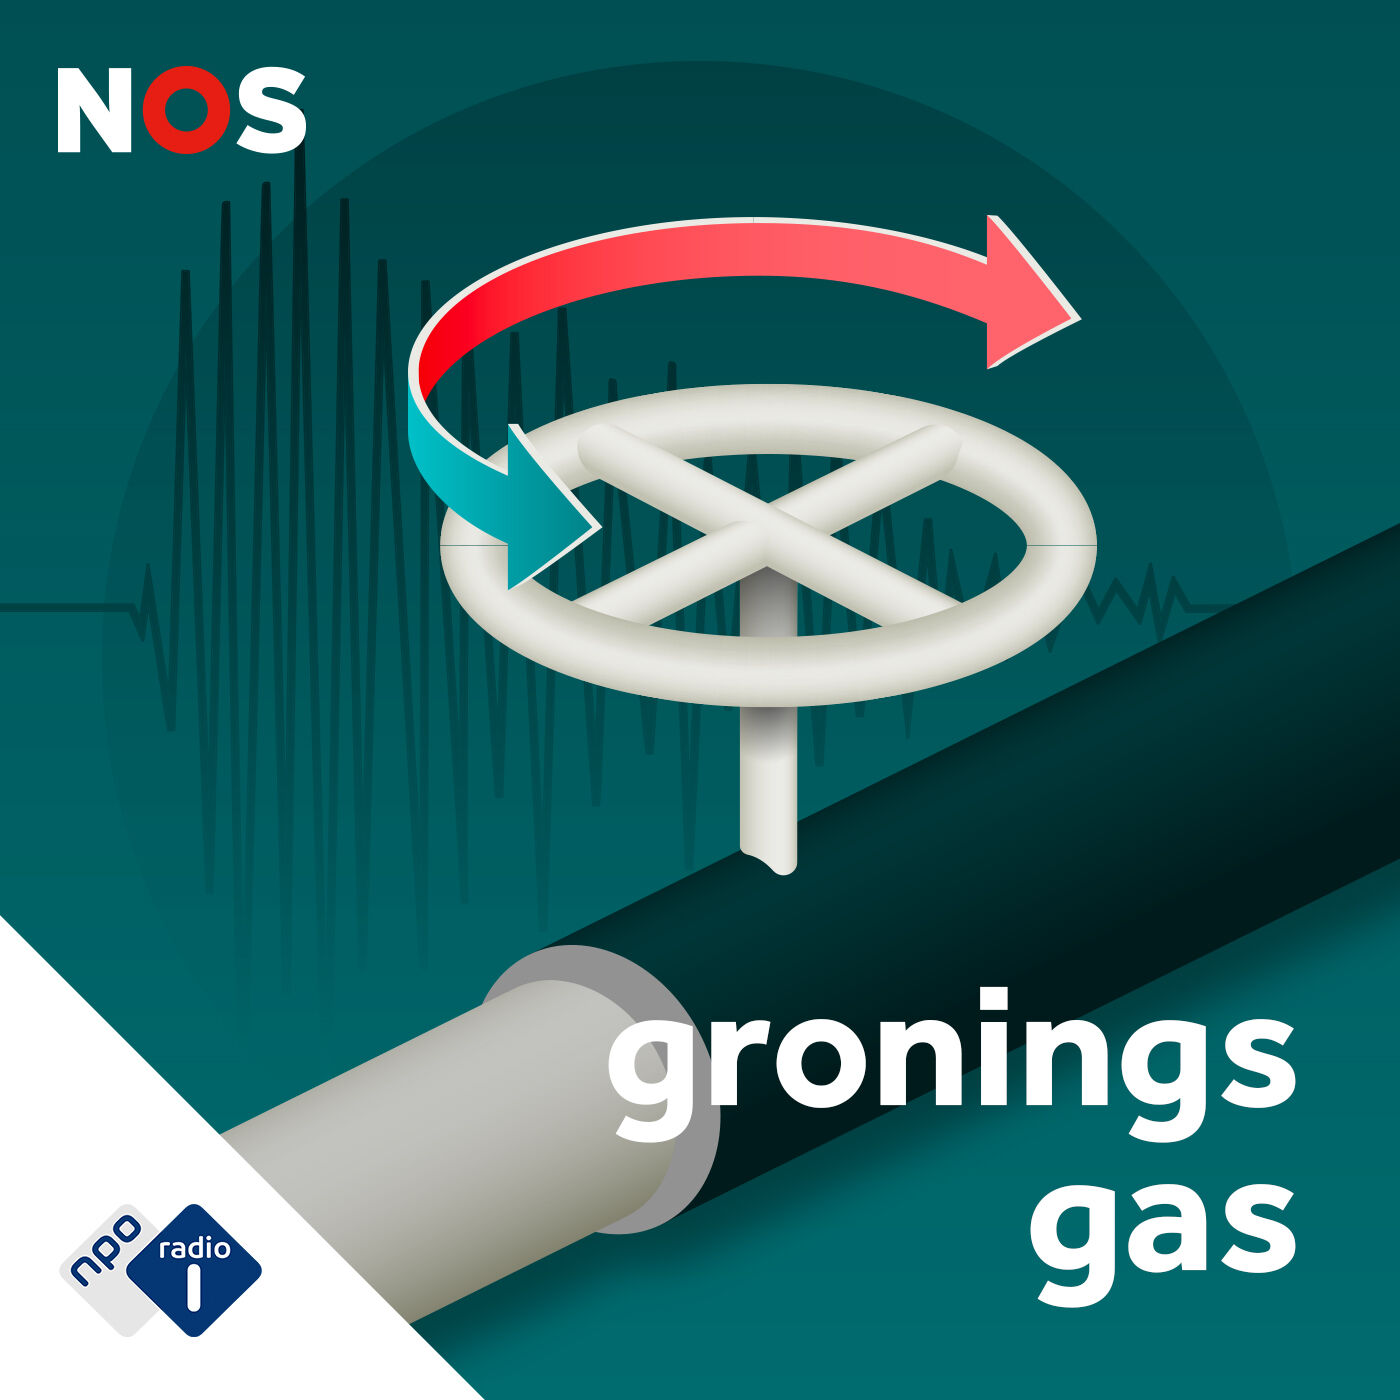 Gronings gas: gewonnen of verloren? podcast show image